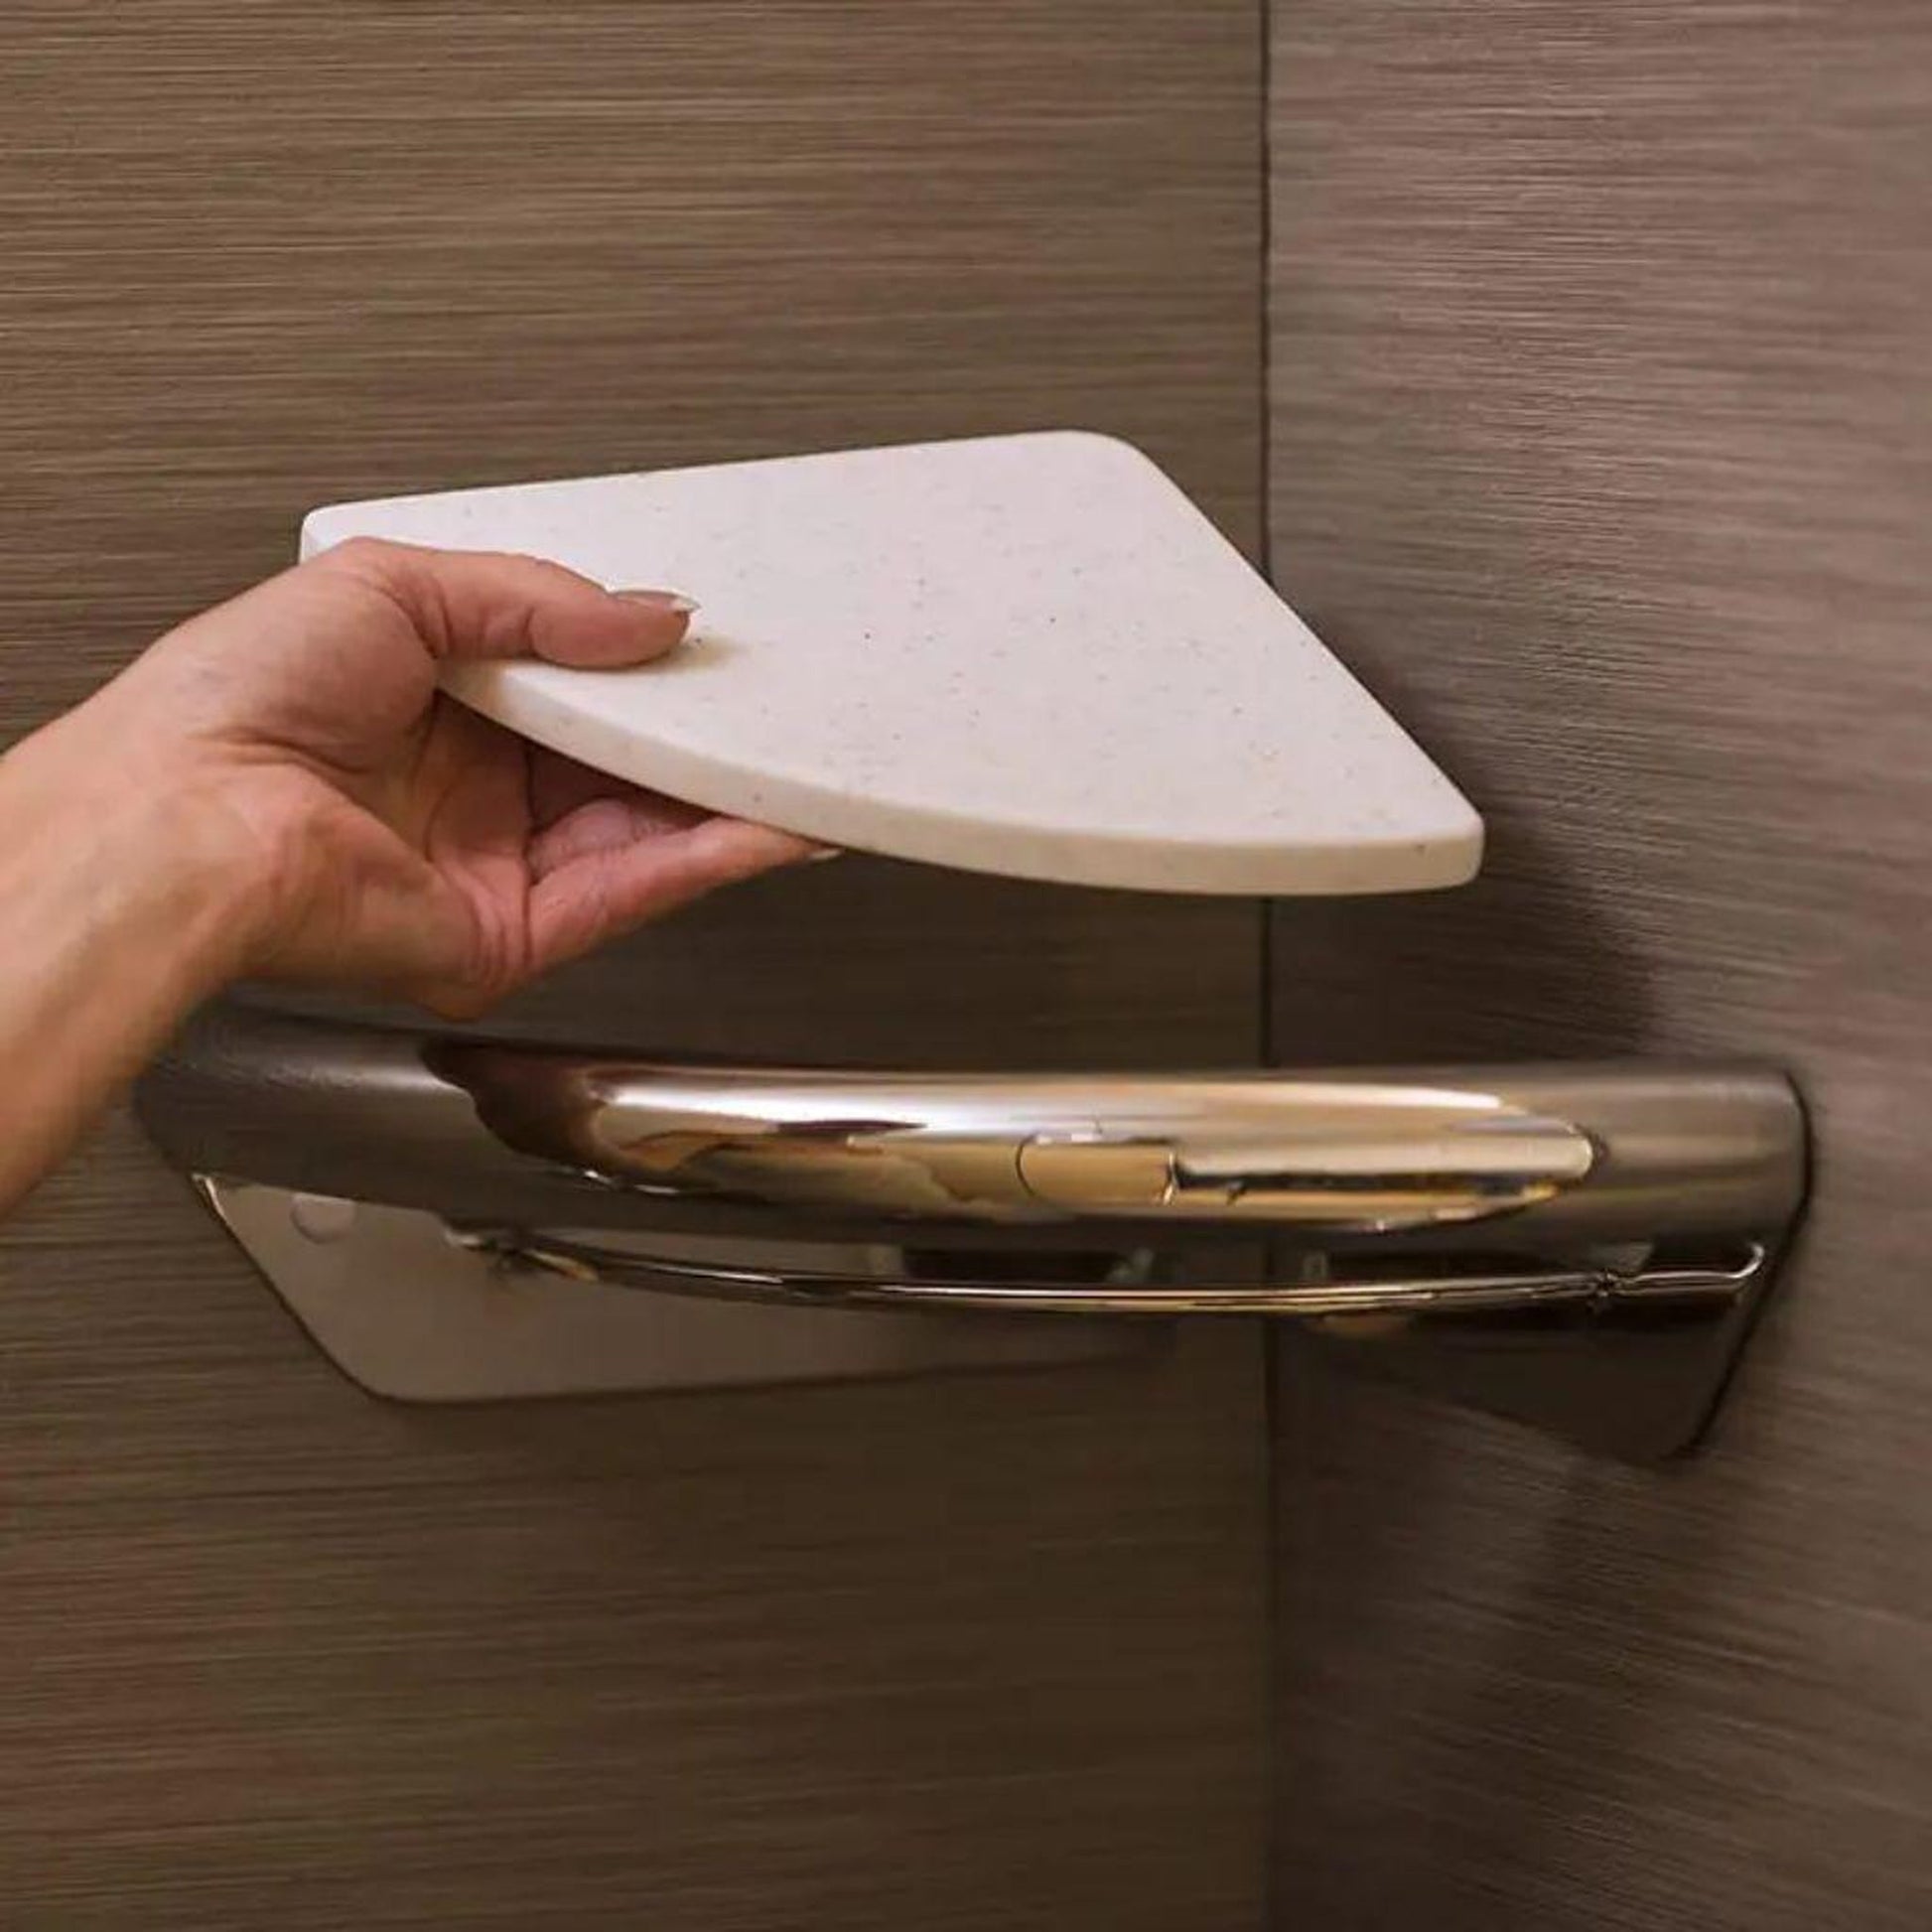 Invisia Wall Toilet Roll Holder - Oil Rubbed Bronze